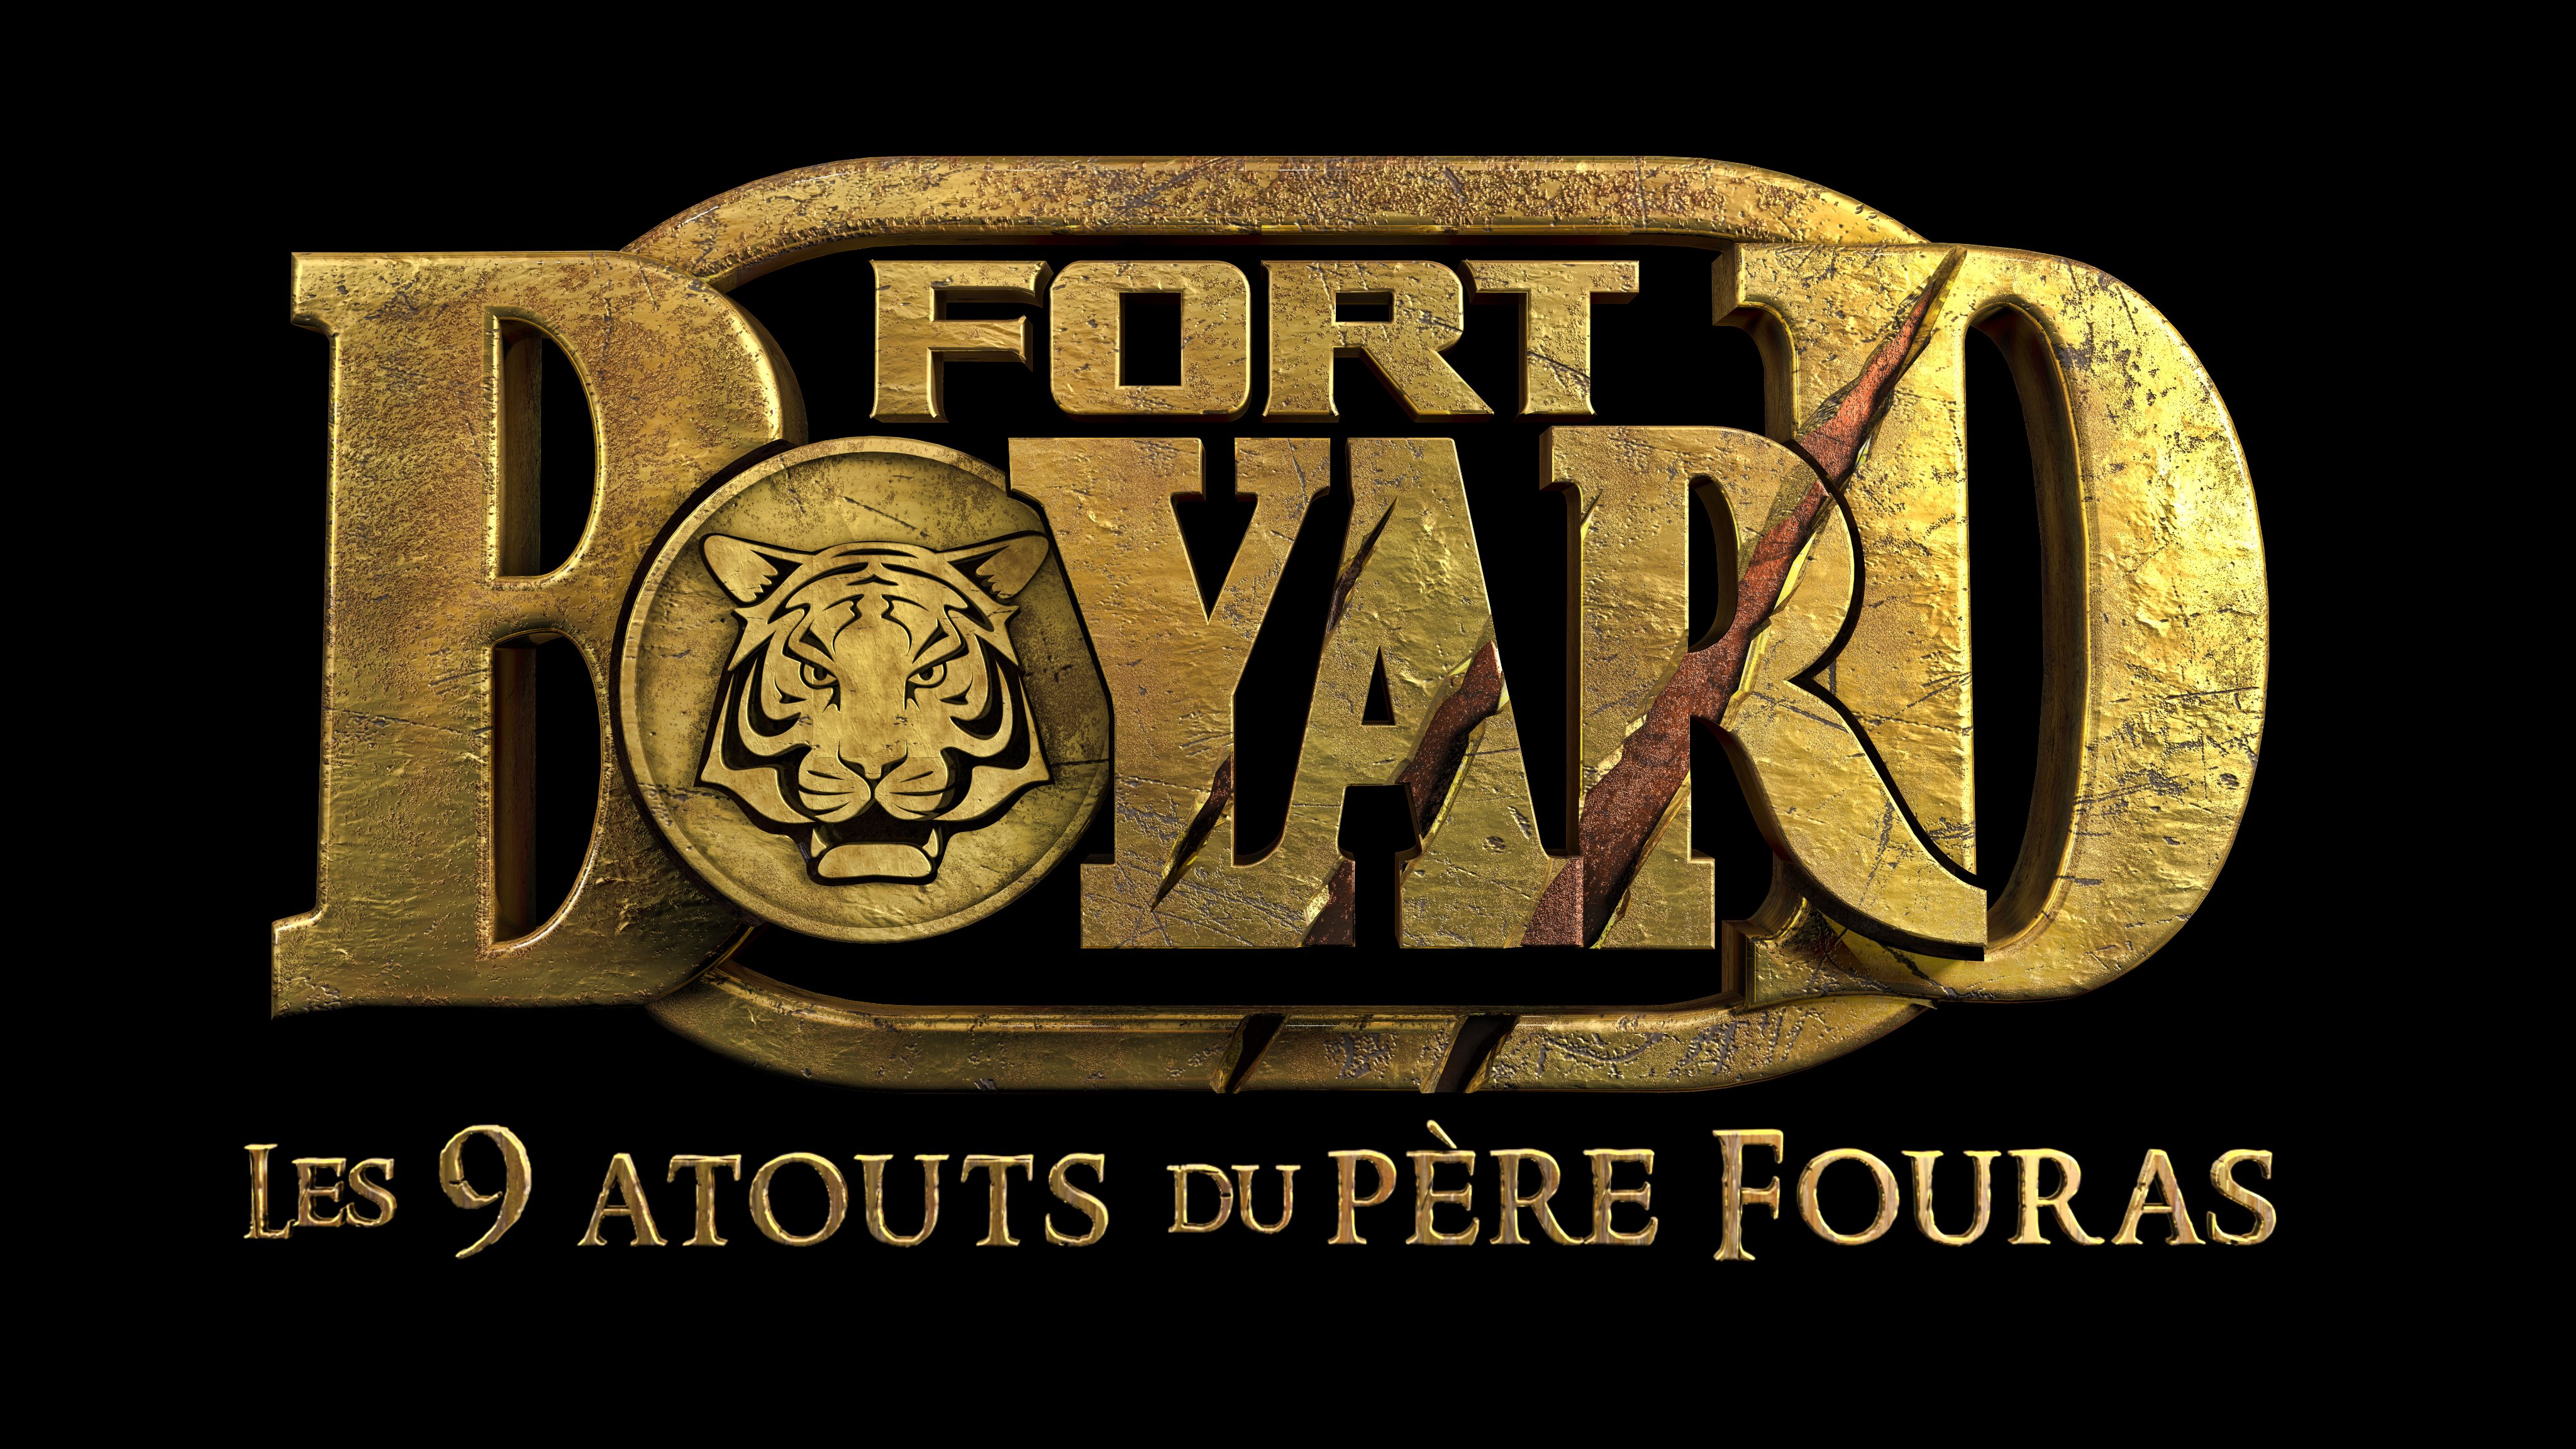 Générique, cinématiques, habillage et logo de Fort Boyard 2022 FVN-PWuXwAA2t0K?format=jpg&name=4096x4096